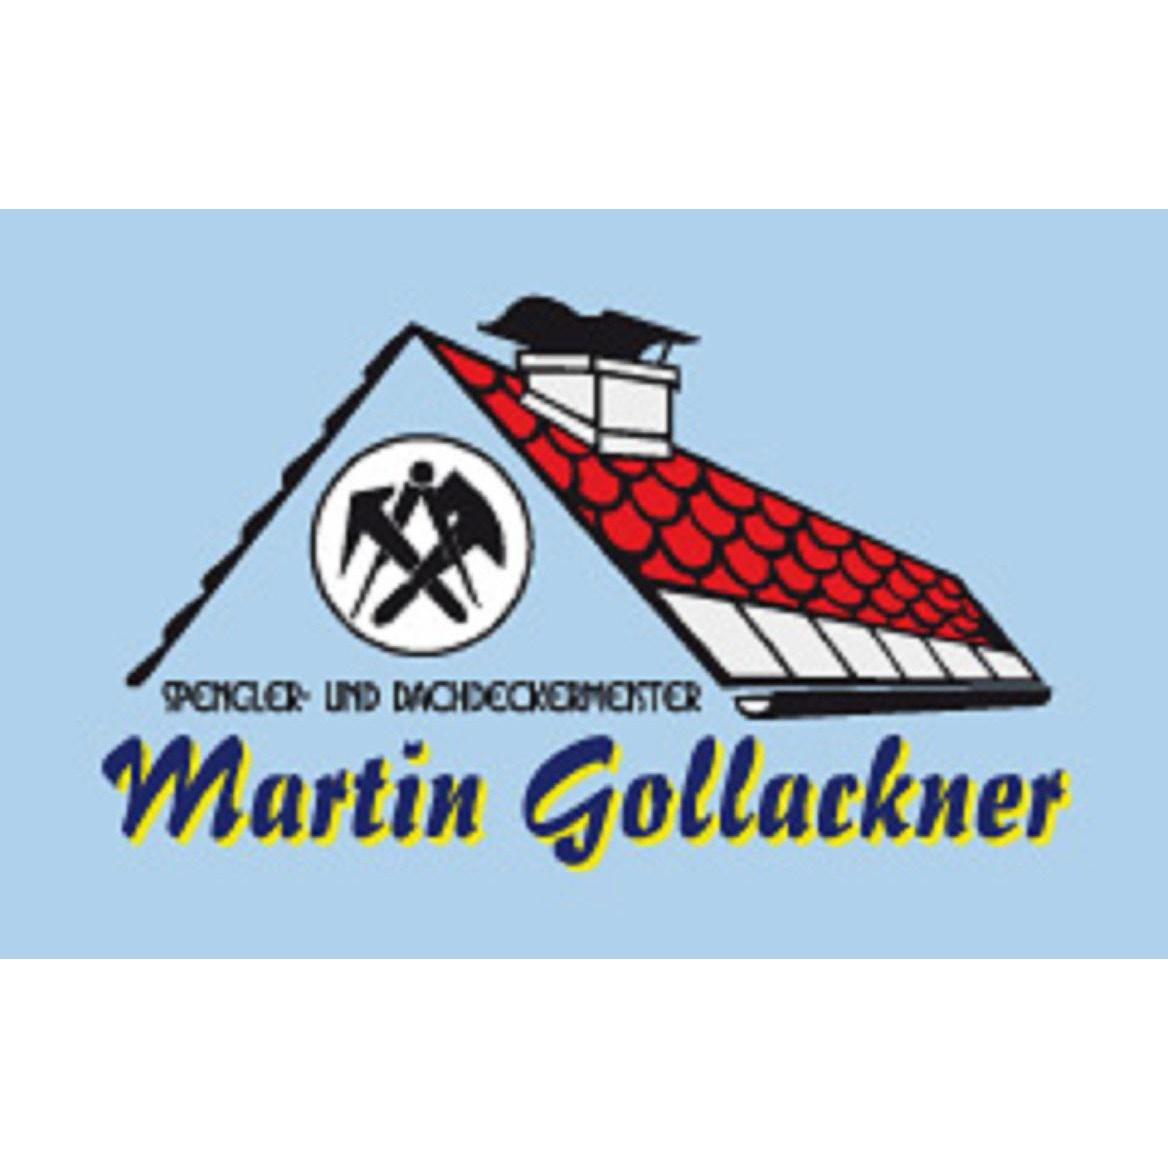 Gollackner Martin - Spengler- u Dachdeckermeister Logo